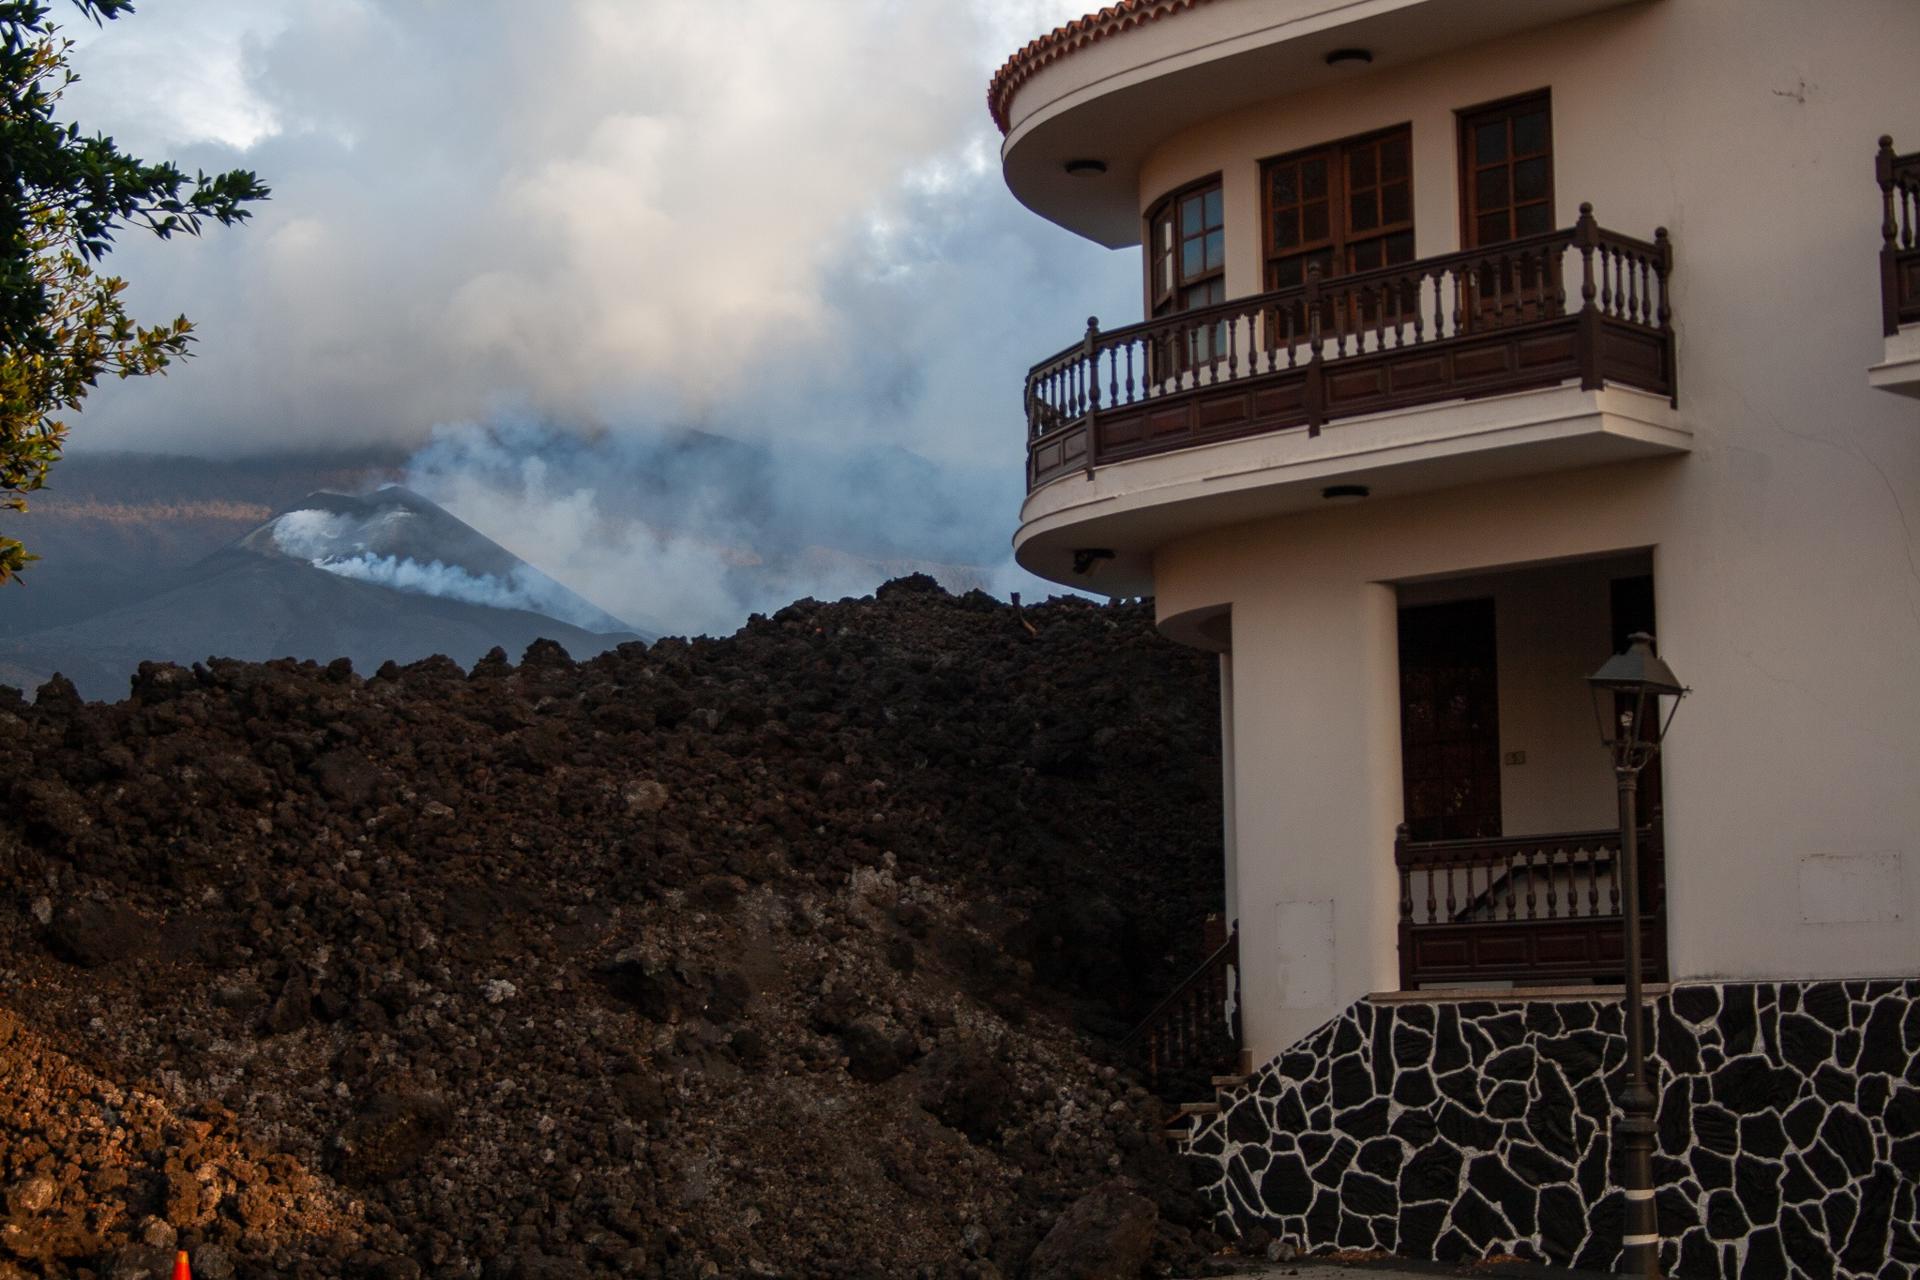 Foto de archivo de la colada que irrumpió en la localidad de La Laguna durante la erupción en La Palma de 2021. EFE/Luis G. Morera